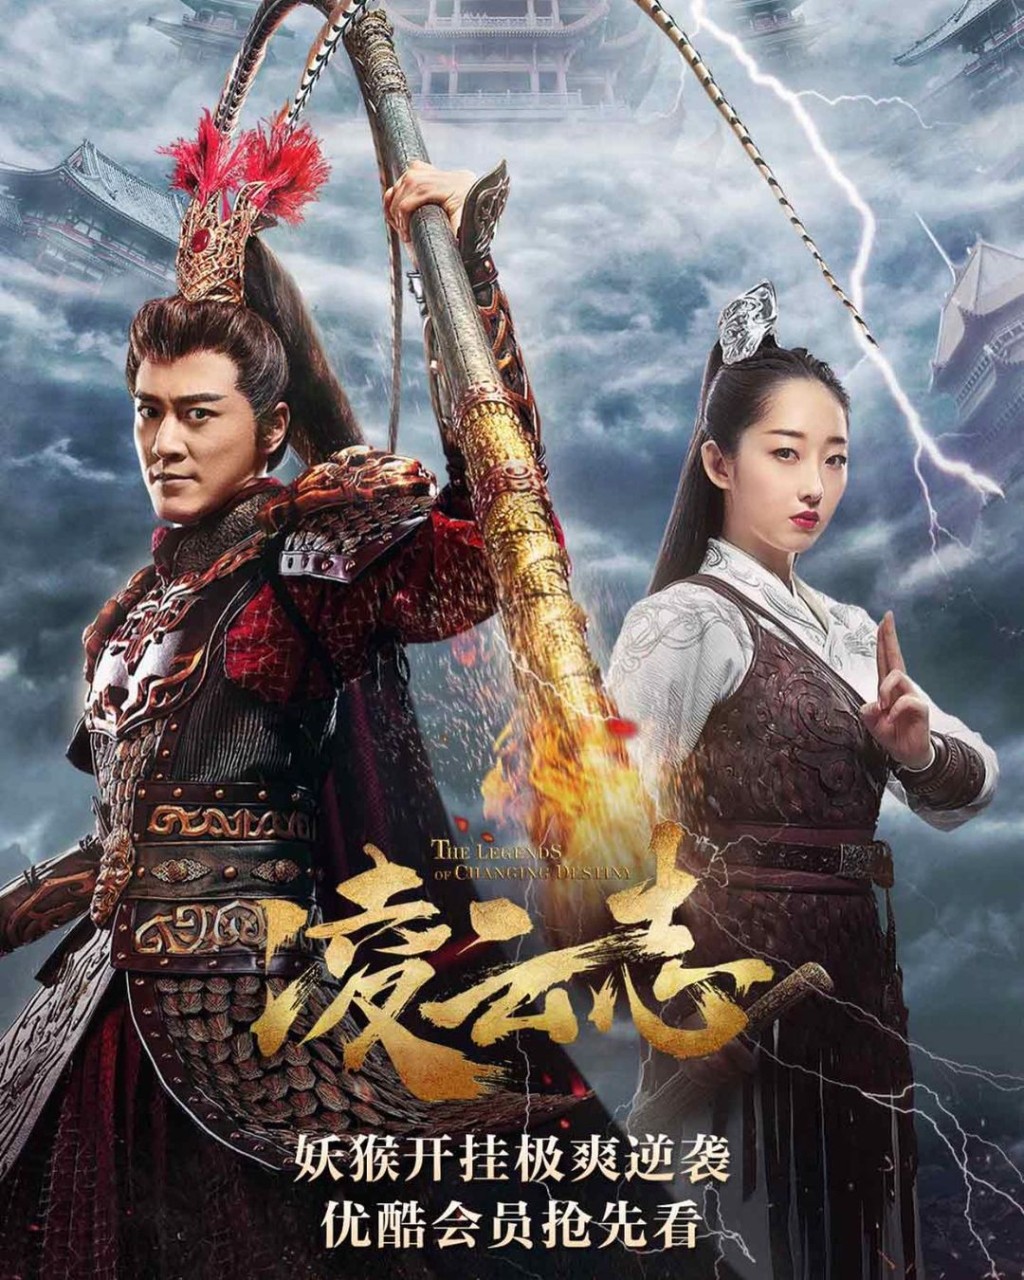 新作為與林峰領銜主演的電視劇《凌雲志》。